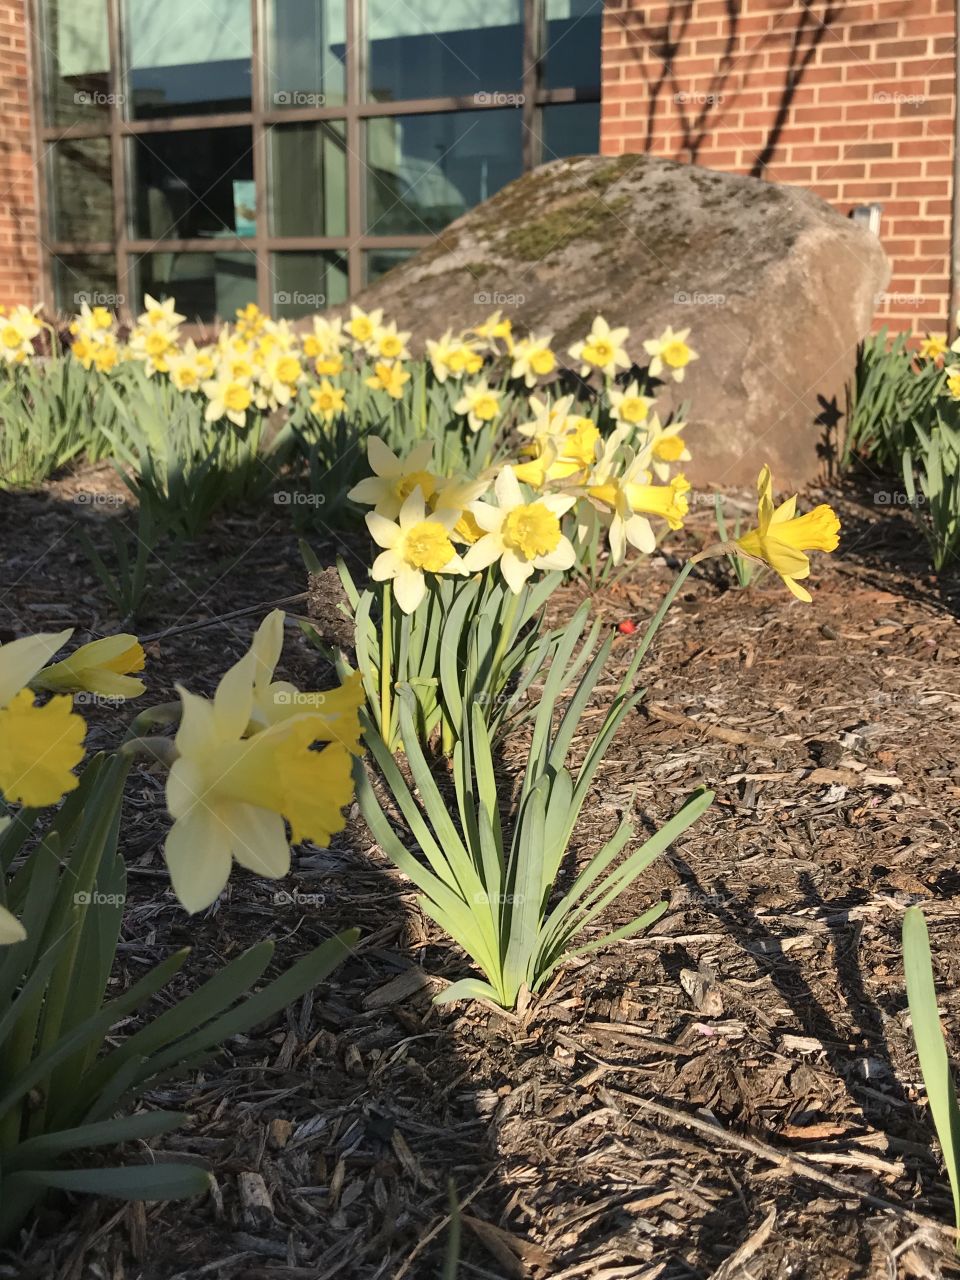 Daffodils in the winter growing beautiful!